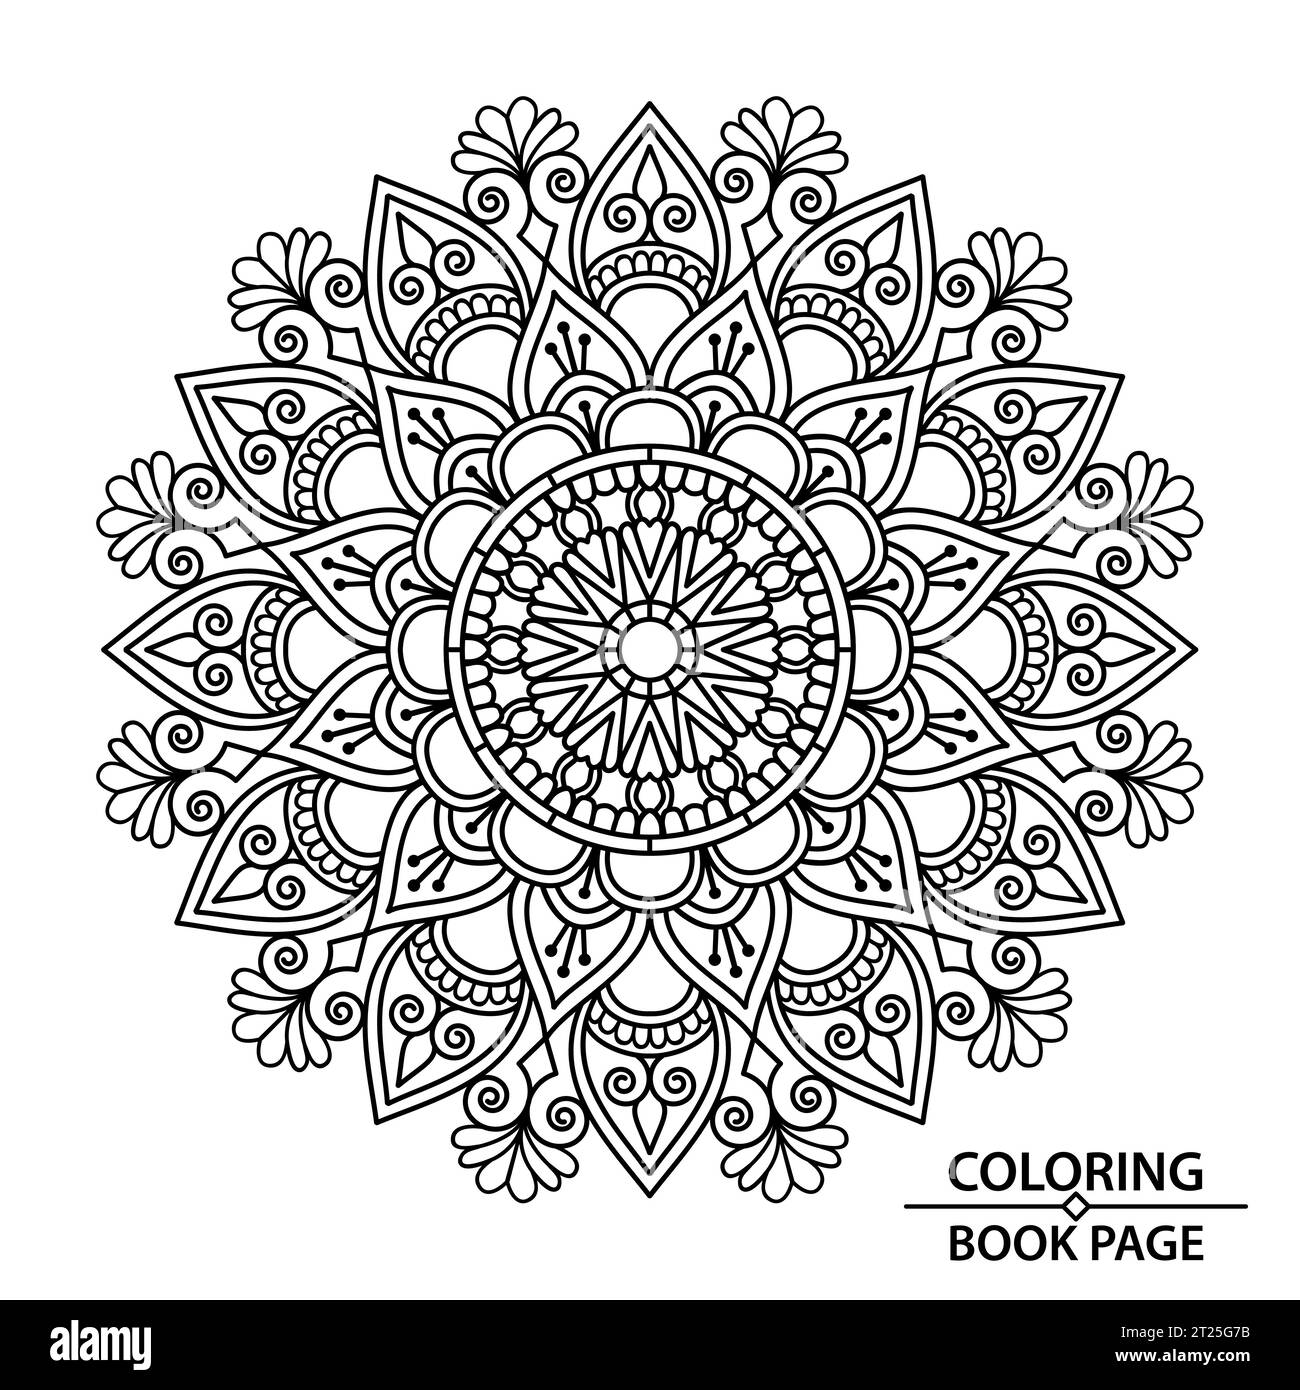 Creative Mandala Design per la pagina dei libri per il taglio e la colorazione della carta. Afferra subito queste semplici pagine da colorare con mandala e goditi alcuni minuti di ininterrotti Illustrazione Vettoriale